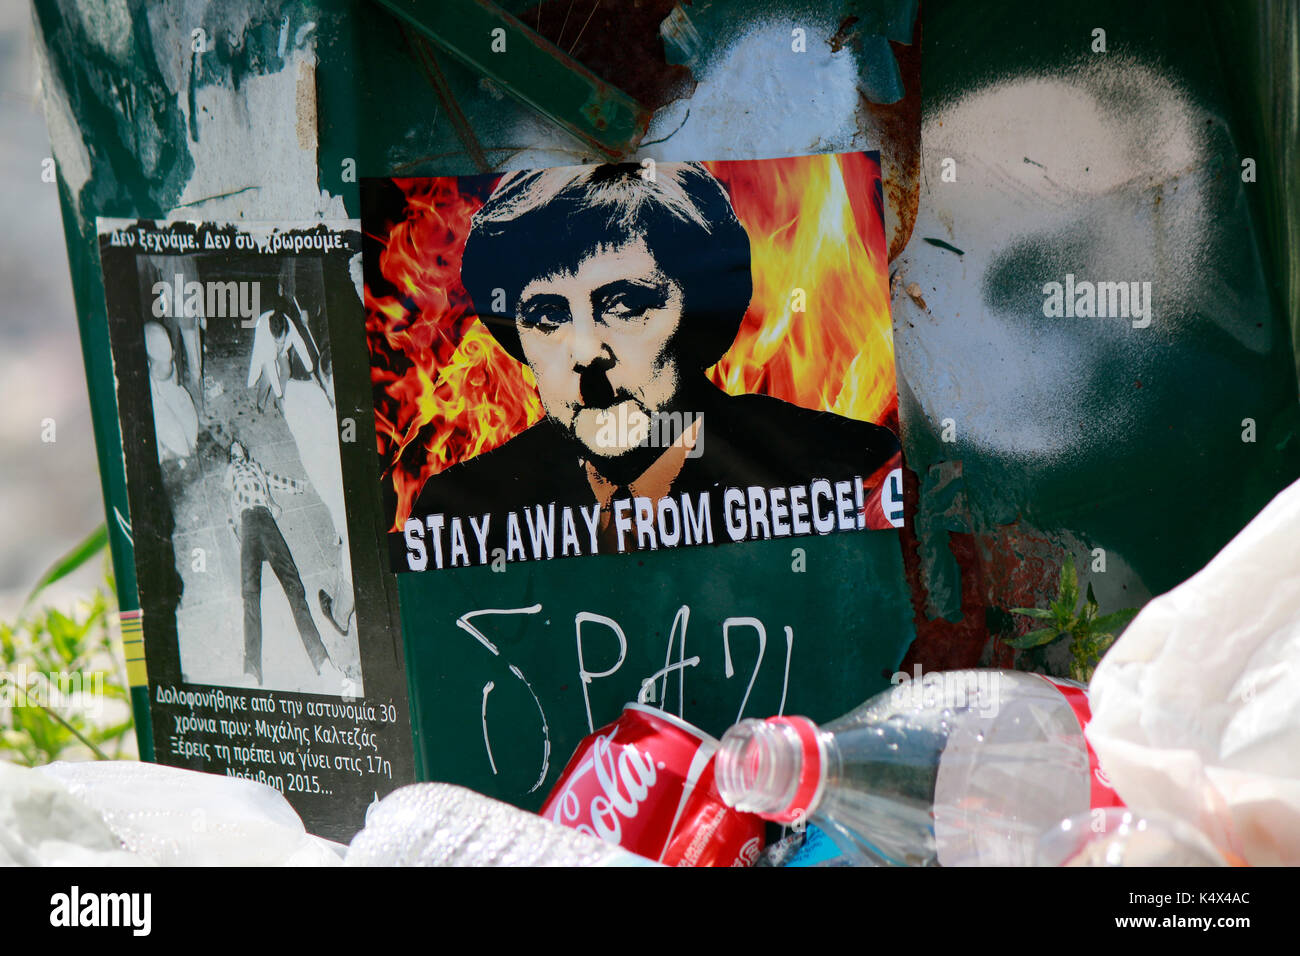 Aufkleber mit dem Portrait der dt. Bundeskanzlerin Angela Merkel in Braunhemd und mit Hakenkreuz mit dem Slogan 'Stay away from Greece' - Impressionen Stock Photo